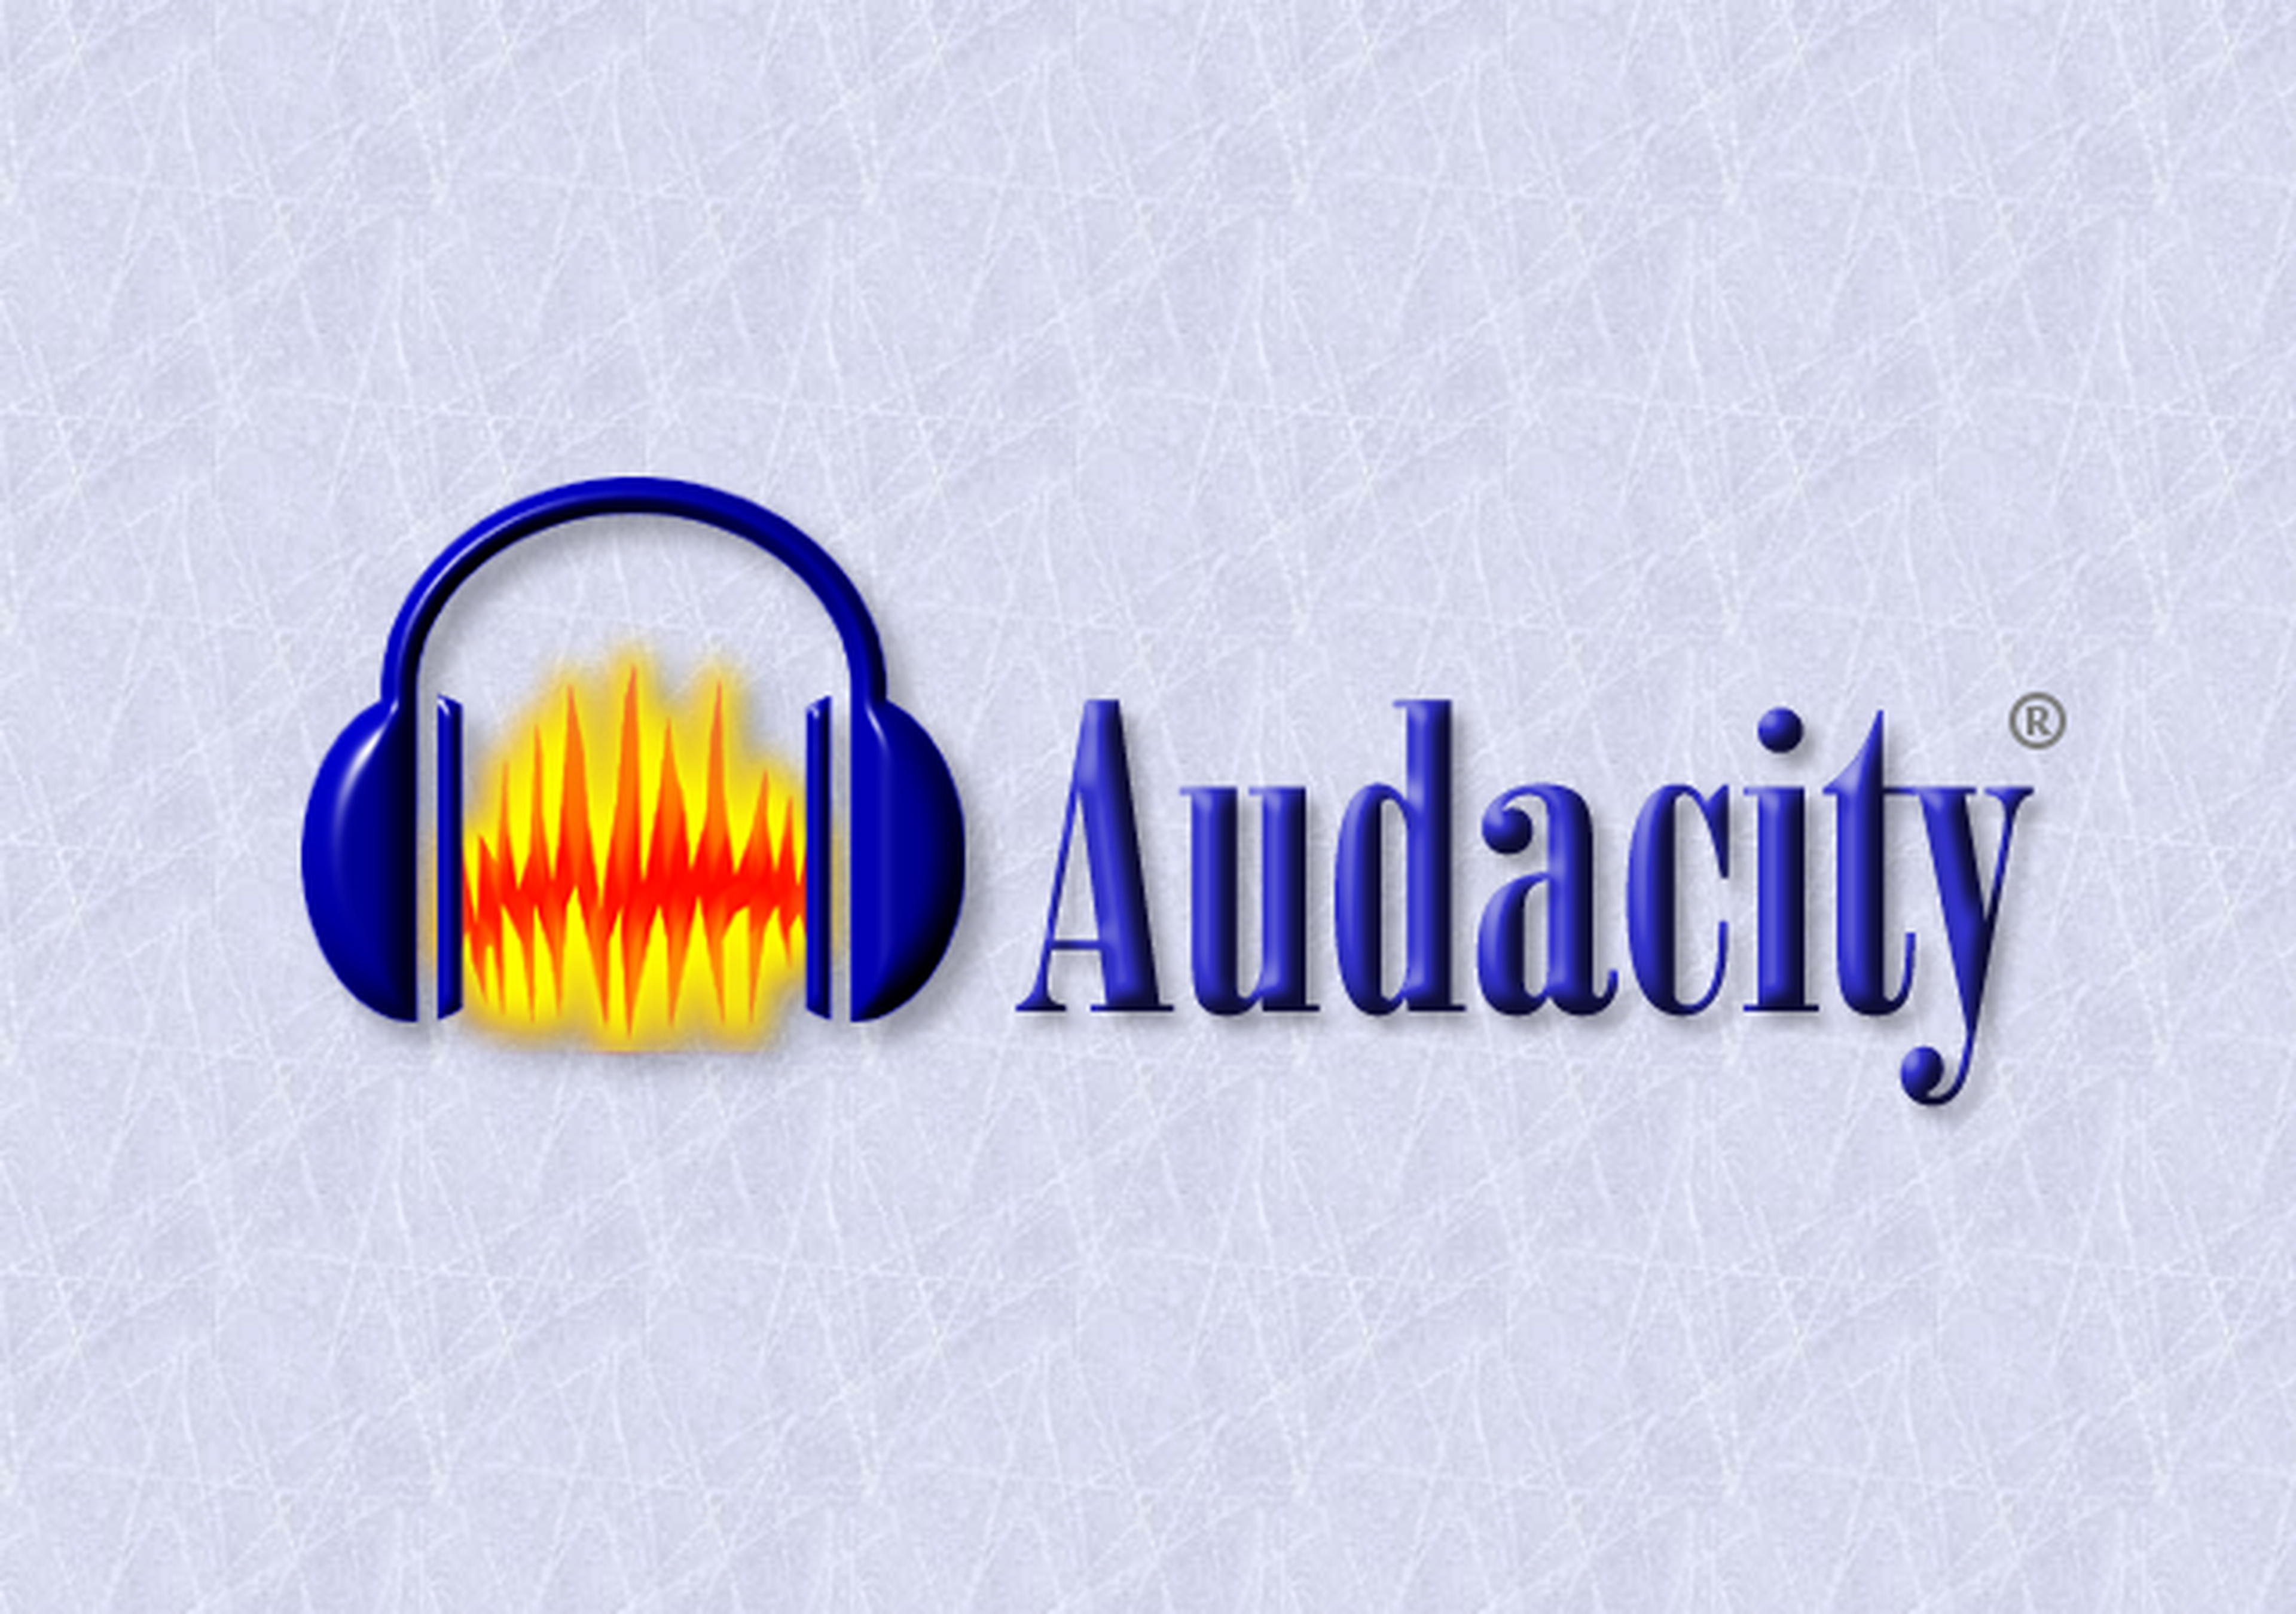 Audacity graba y edita tus fuentes de audio y es totalmente gratuito